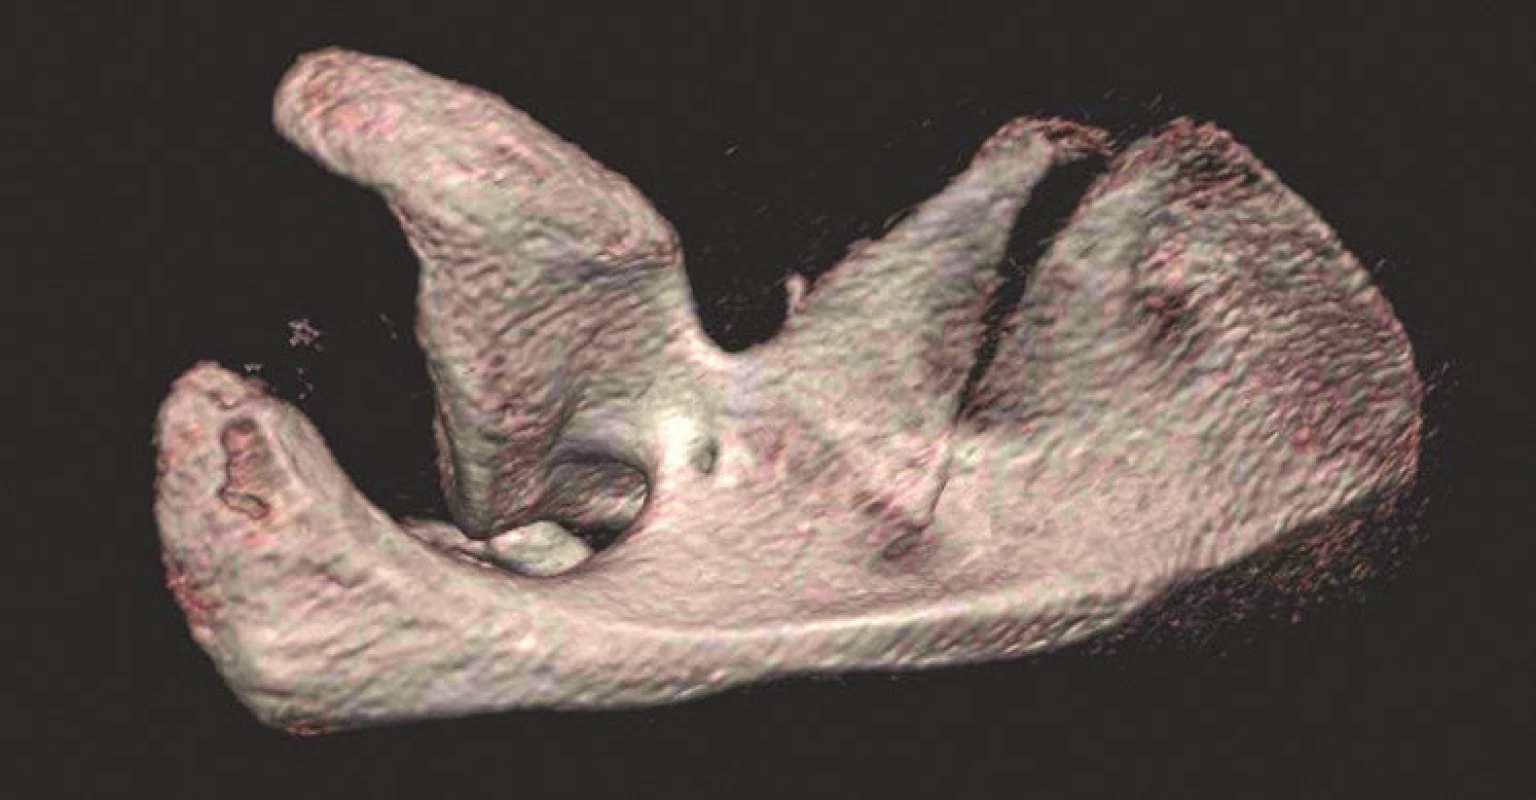 Význam 3D CT rekonstrukcí pro určení typu zlomeniny (v tomto případě transspinózní zlomeniny krčku lopatky: a – rtg snímek levého ramena zachycující zlomeninu, ale nelze určit její anatomii; b – 3D CT rekonstrukce – přední pohled; c – 3D CT rekonstrukce – zadní pohled; d – 3D CT rekonstrukce – pohled do supraspinátní jámy. 
Fig. 4: Importance of 3D CT reconstructions for determination of fracture type (in this case transspinous fracture of scapular neck: a – ap radiograph of left shoulder showing scapular fracture, but its anatomy cannot be identified; b – 3D CT reconstruction – anterior view; c – 3D CT reconstruction – posterior view; d – 3D CT reconstruction – view into supraspinous fossa.